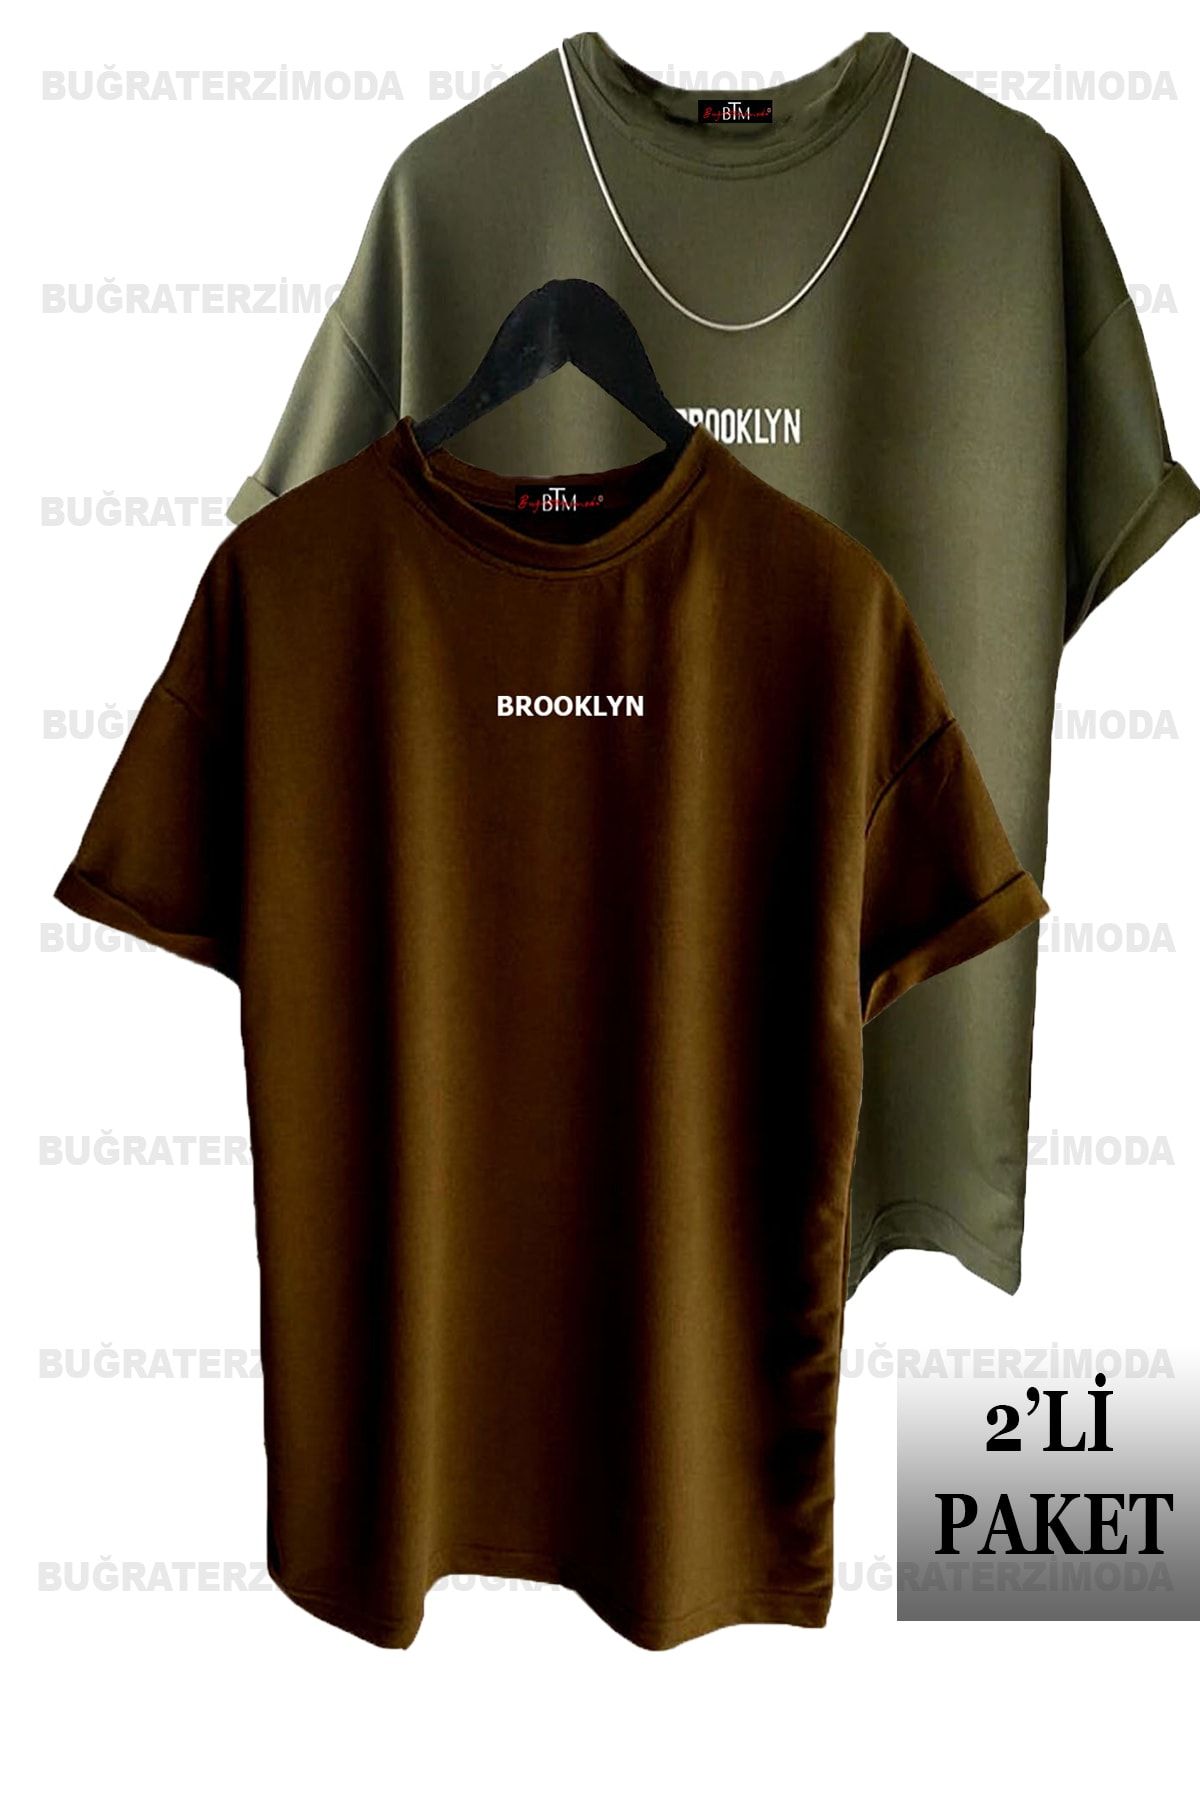 Buğraterzimoda Brooklyn Baskılı Unisex Haki-Kahverengi 2'li Oversize T-Shirt Paketi